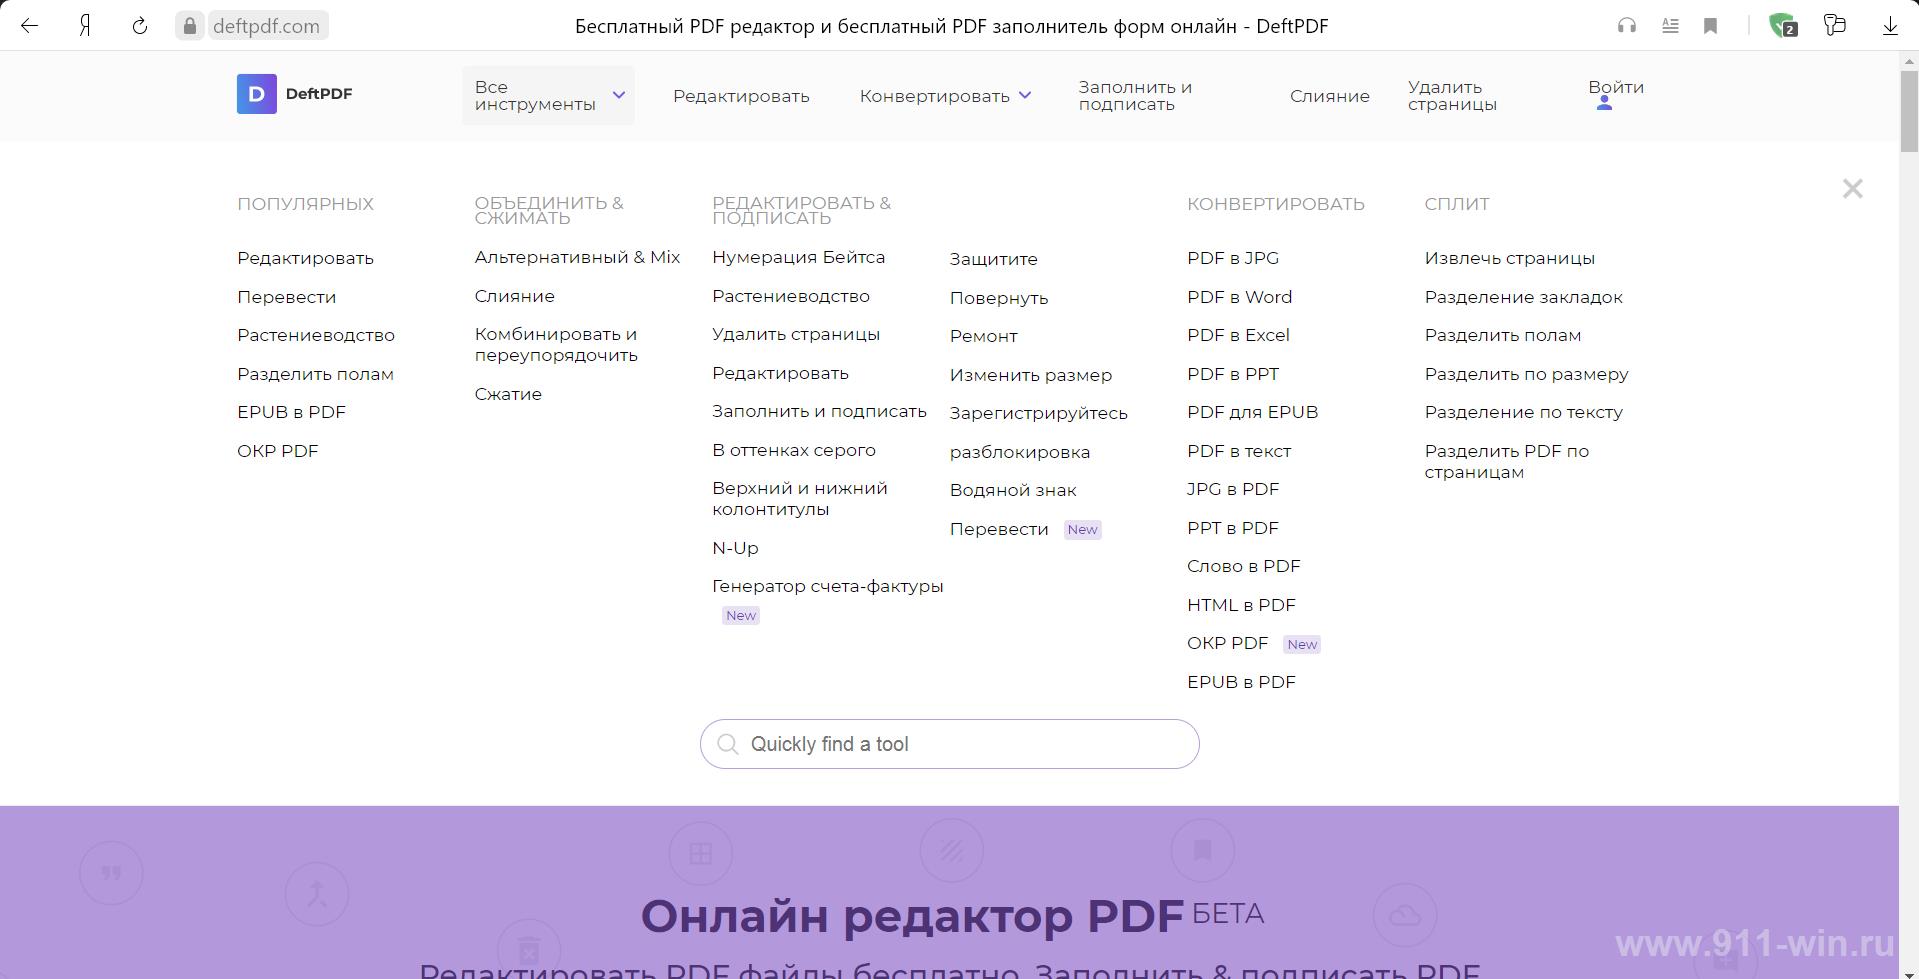 Панель управления редактором DEFT PDF